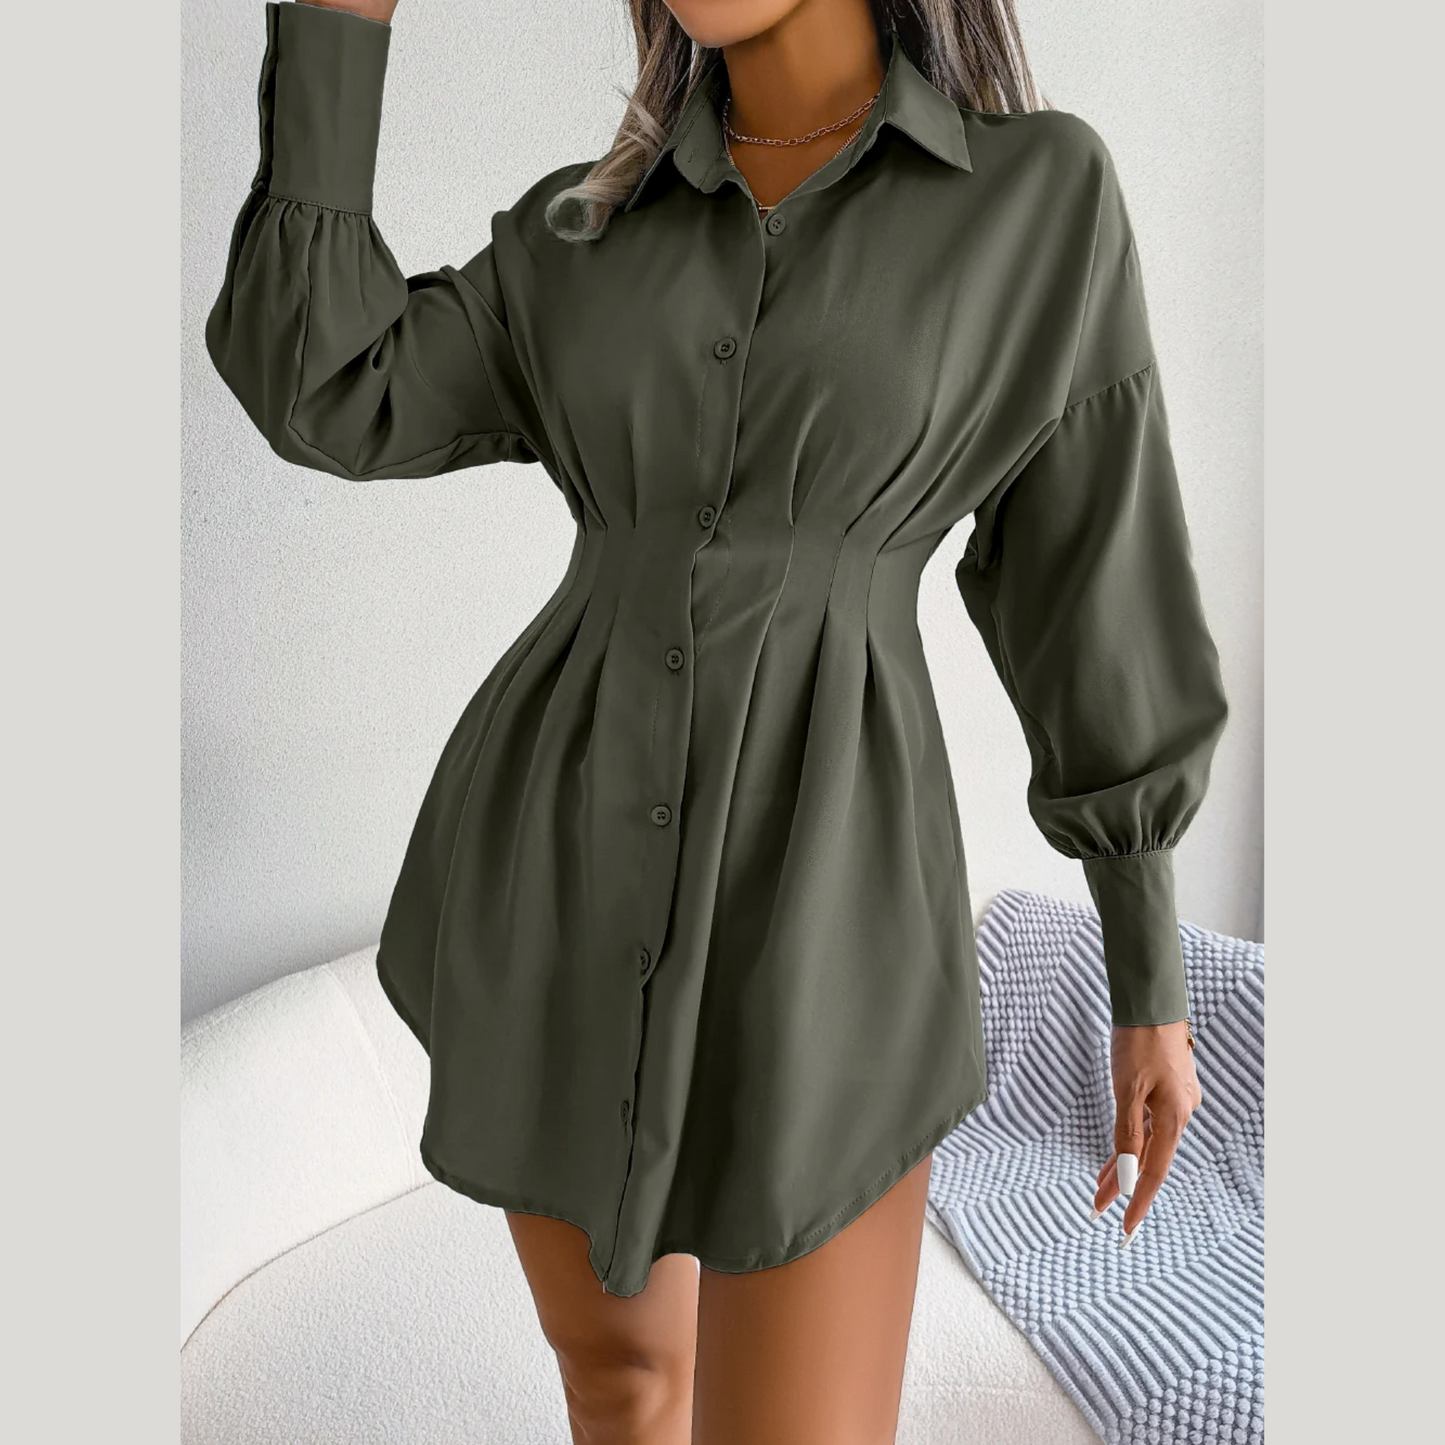 Adalee - Green Asymmetric Button-Up Shirt Dress